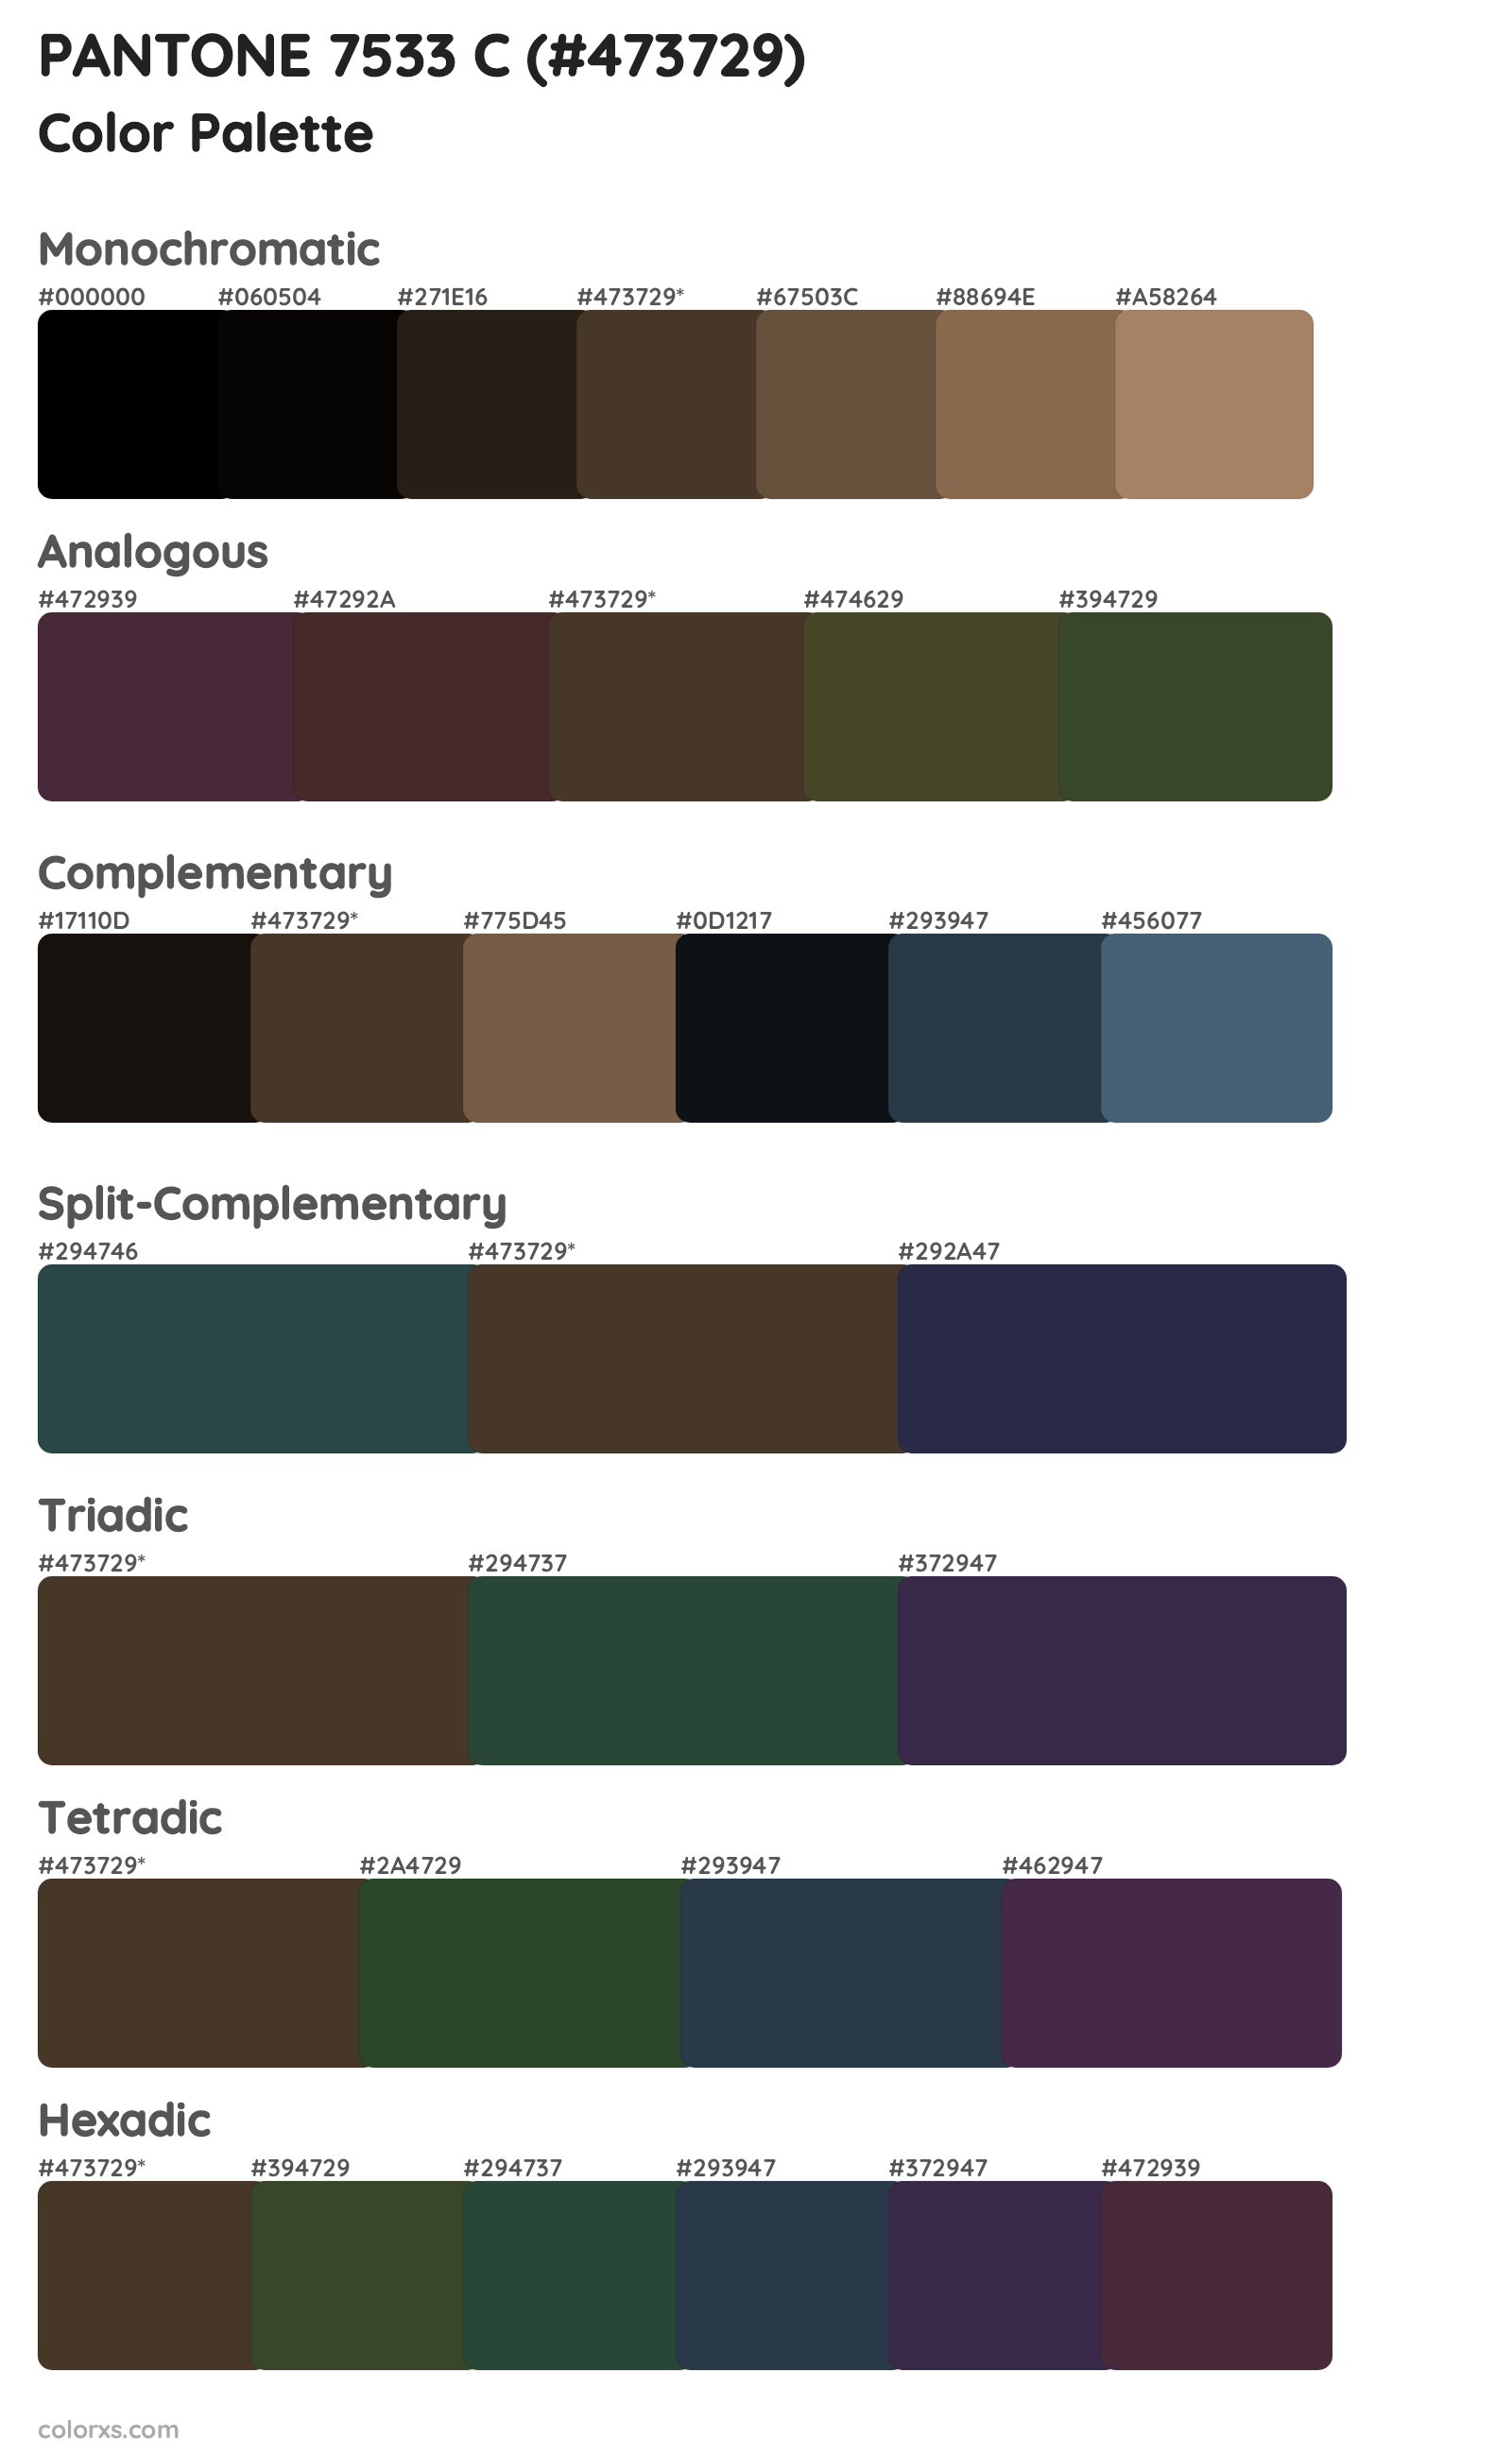 PANTONE 7533 C Color Scheme Palettes